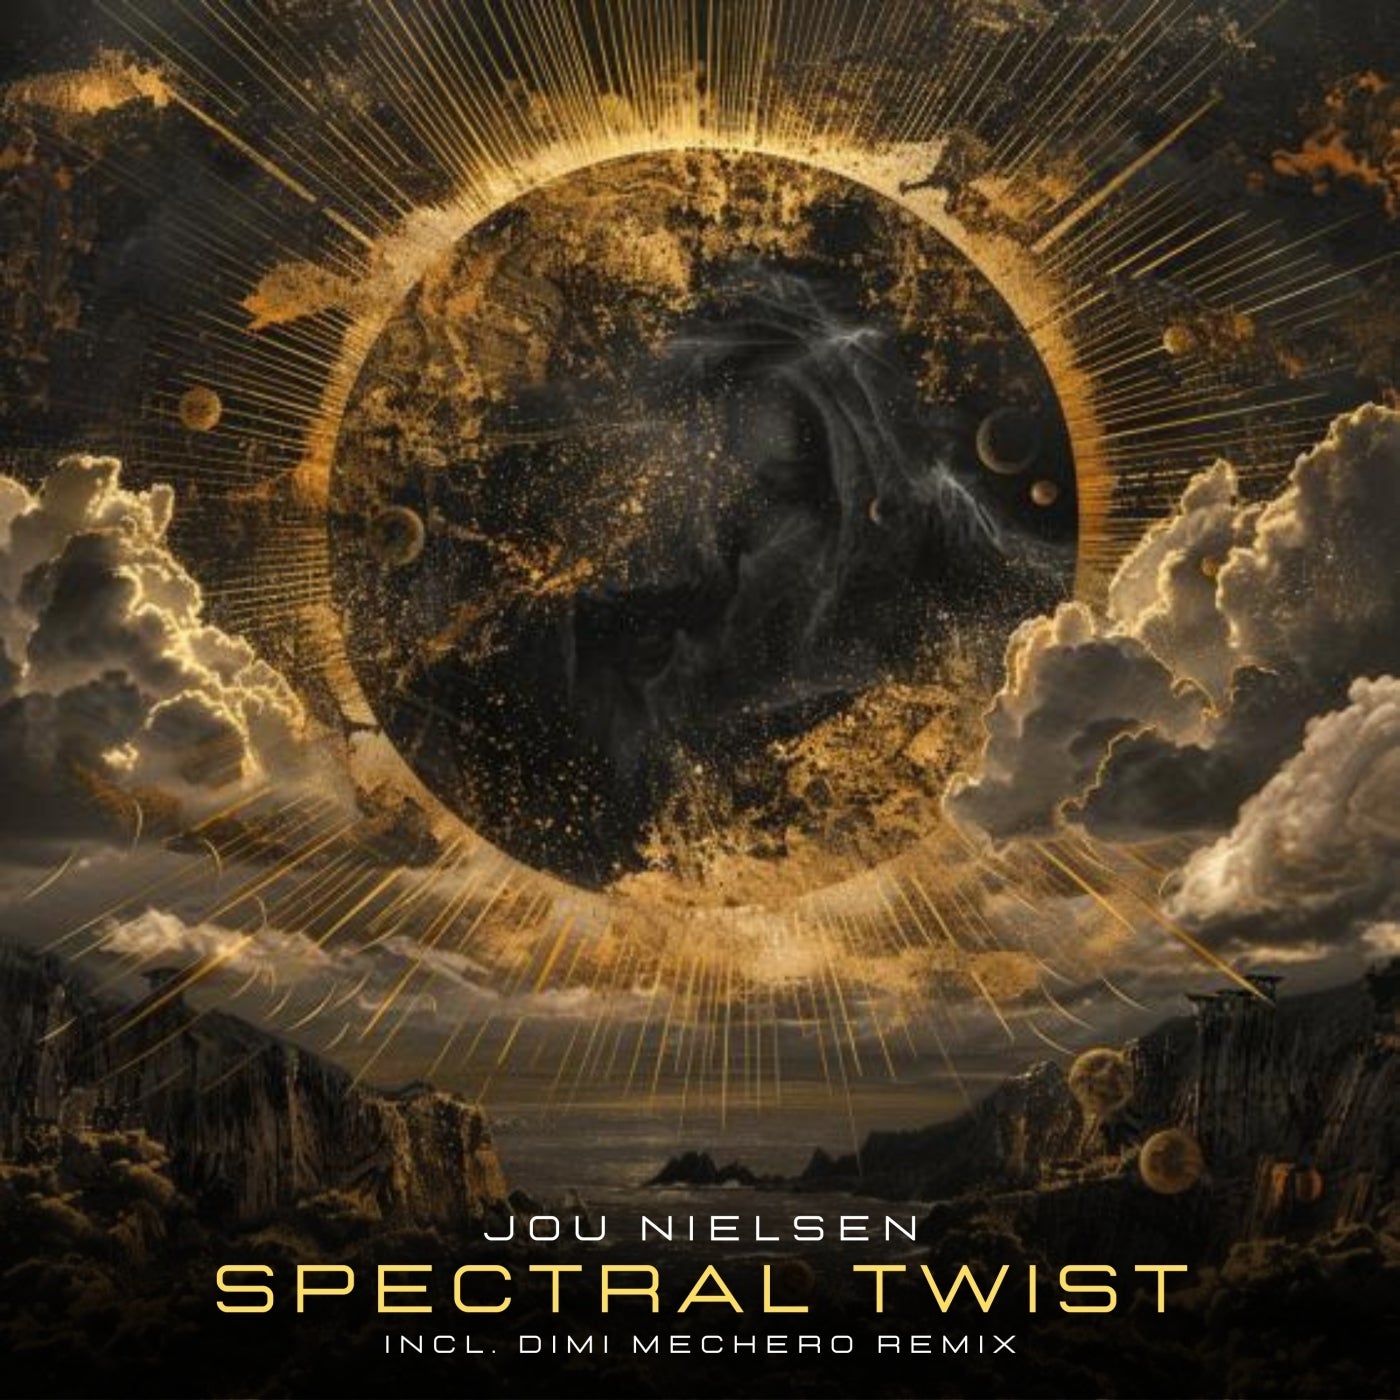 Spectral Twist